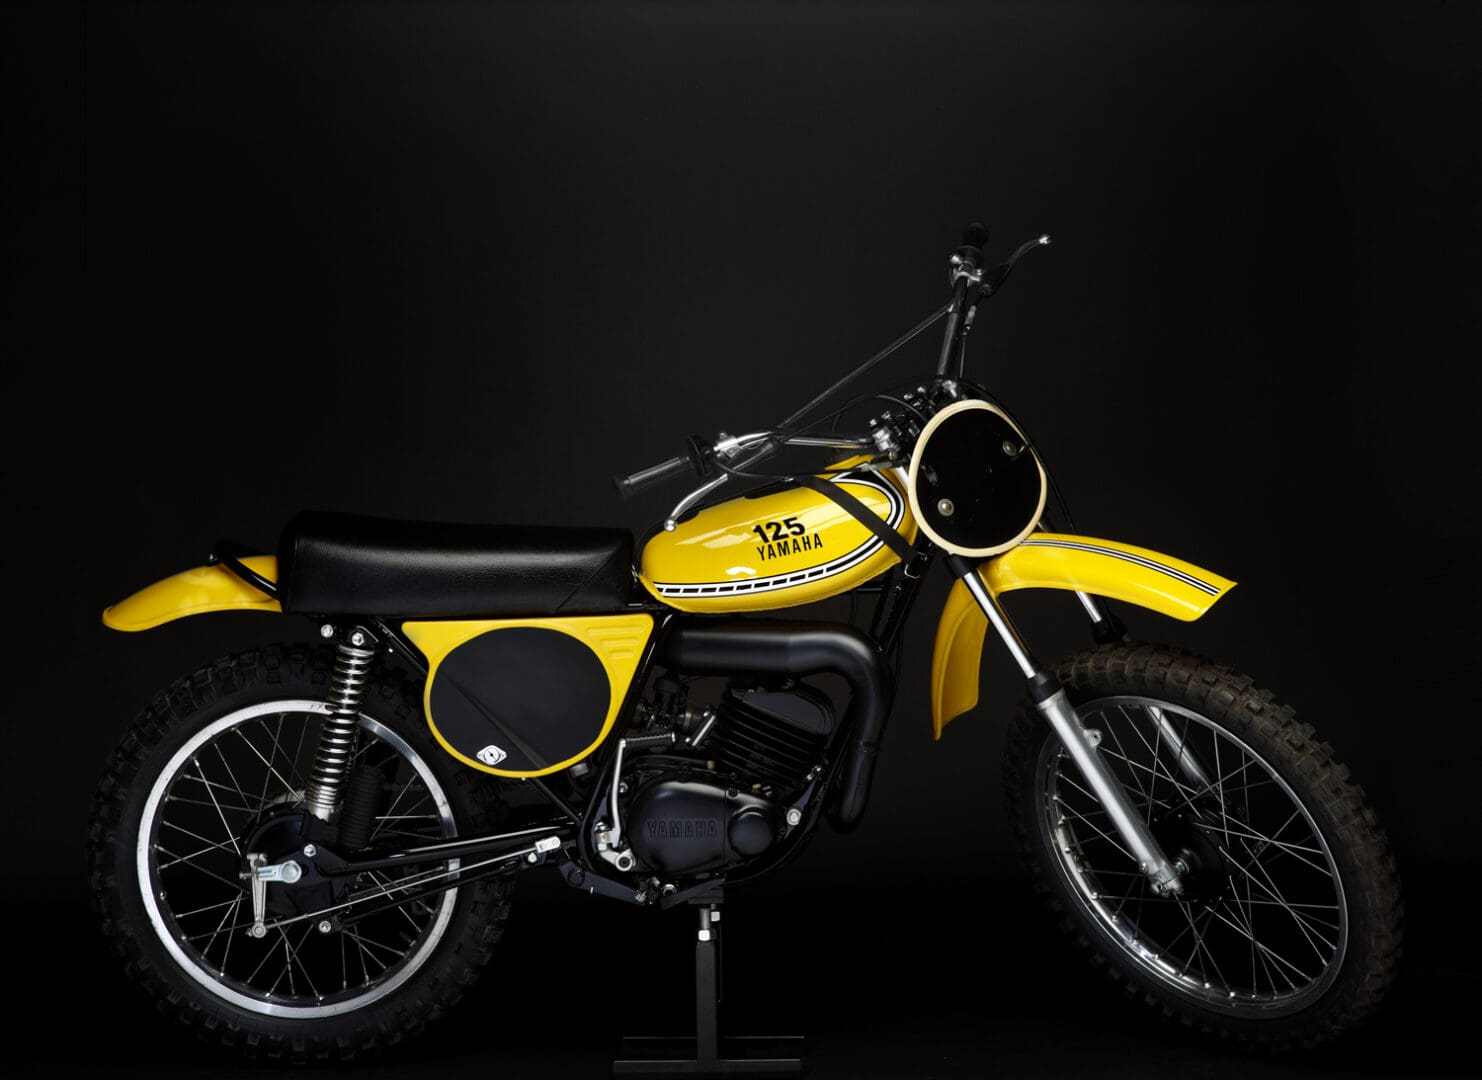 1975 Yamaha YZ125B bike on black background